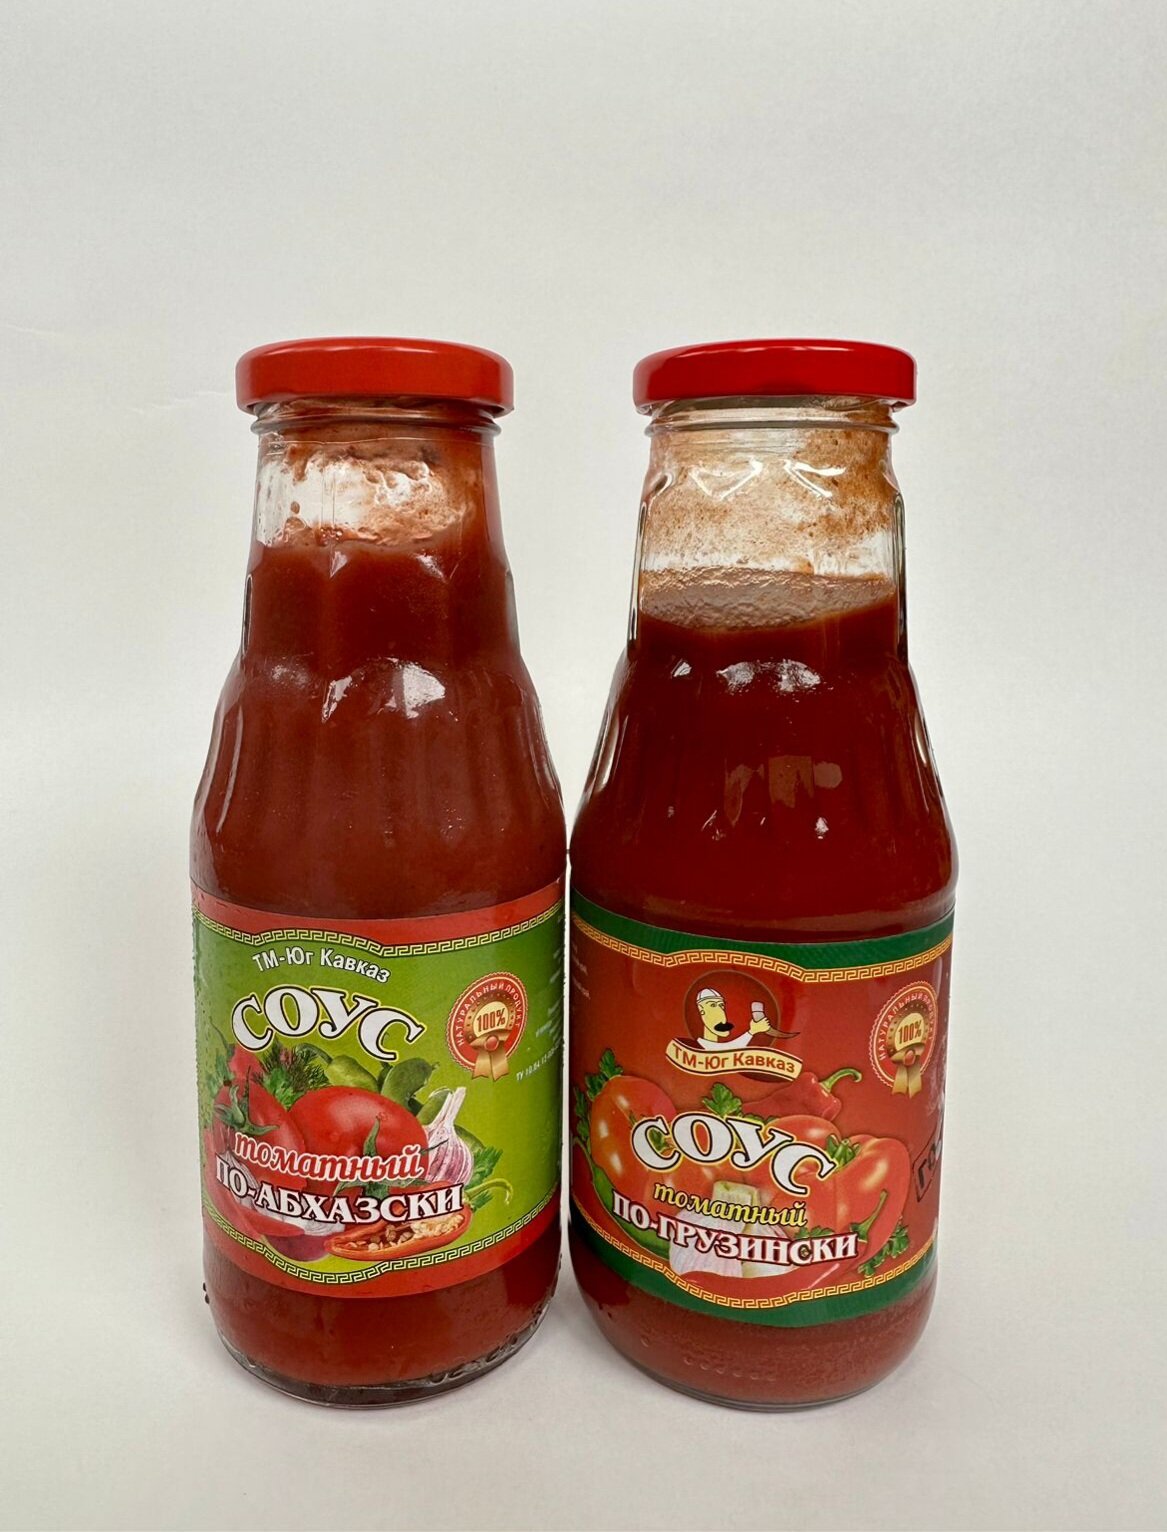 Соус томатный по-грузински, по-абхазски 2 шт. по 330 г.